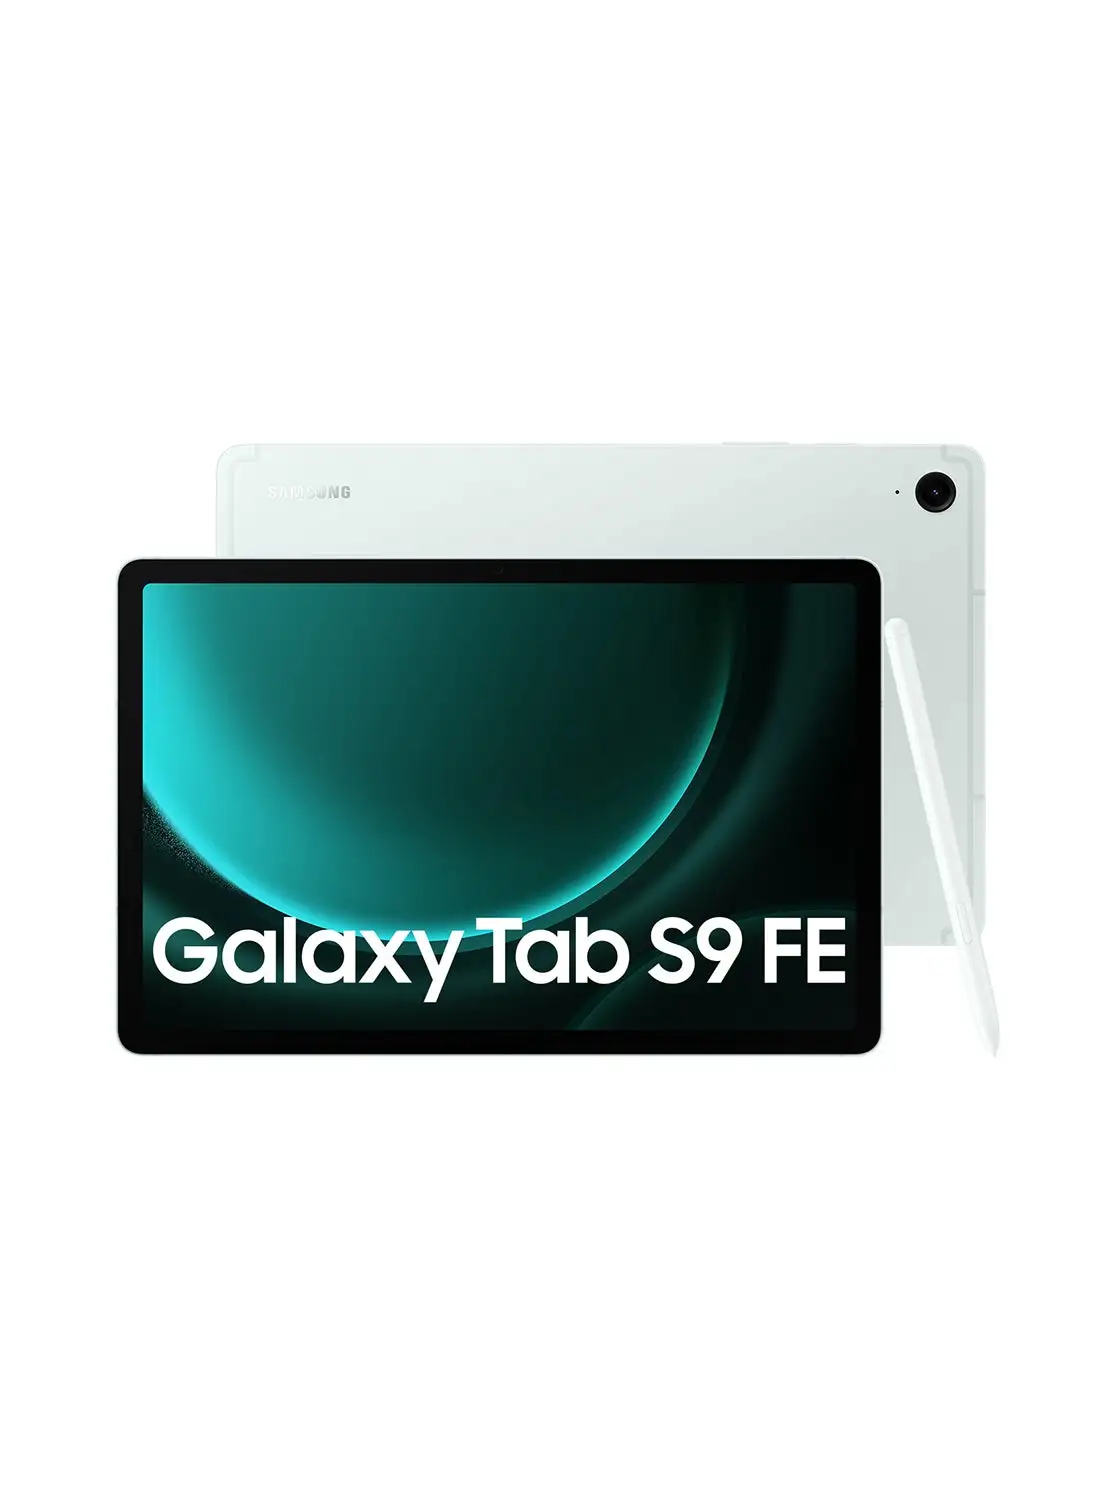 Samsung Galaxy Tab S9 FE Mint 6GB RAM 128GB 5G - Middle East Version